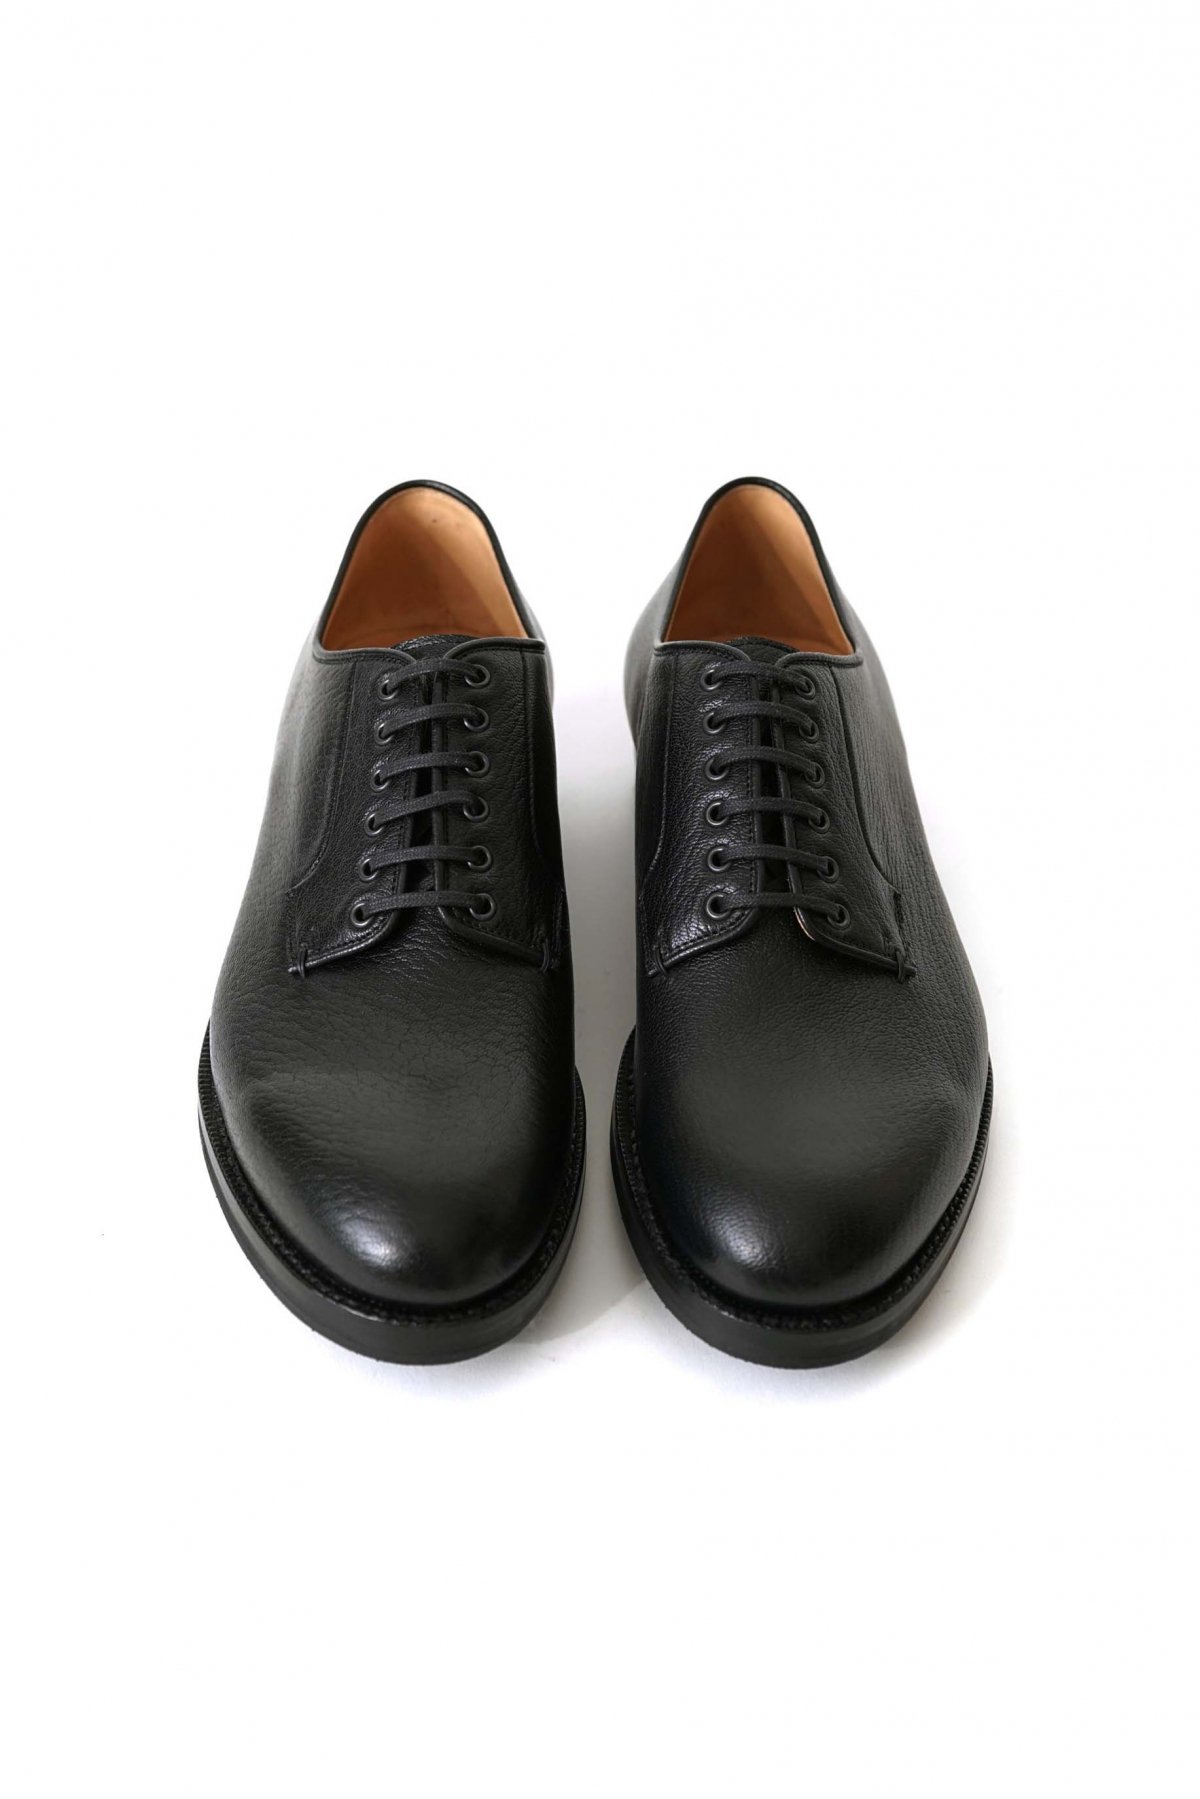 フラテッリ・ジャコメッティ 革靴 ウイングチップ イタリア 職人靴